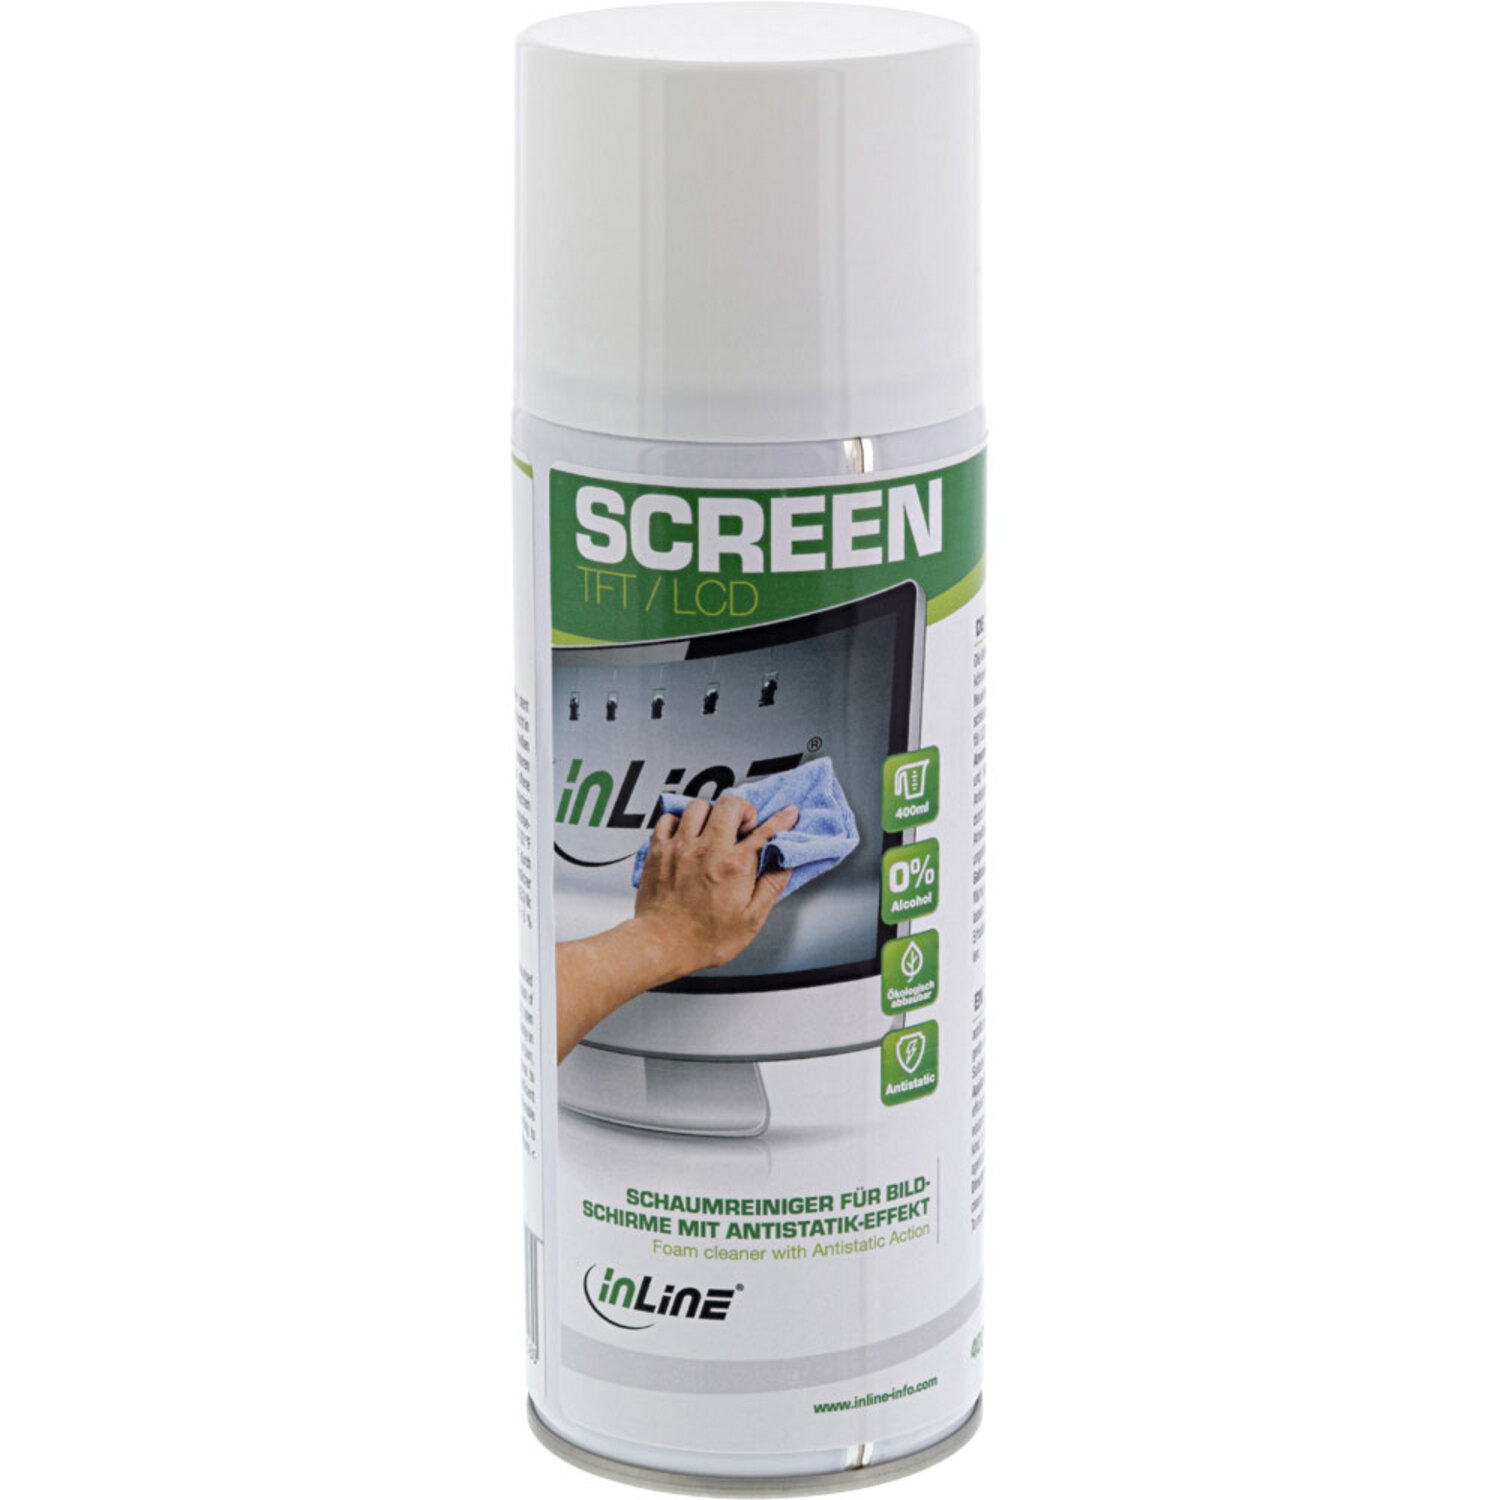 INLINE InLine® Schaumreiniger für Bildschirme Antistatik-Effekt, mit 400ml Reinigung